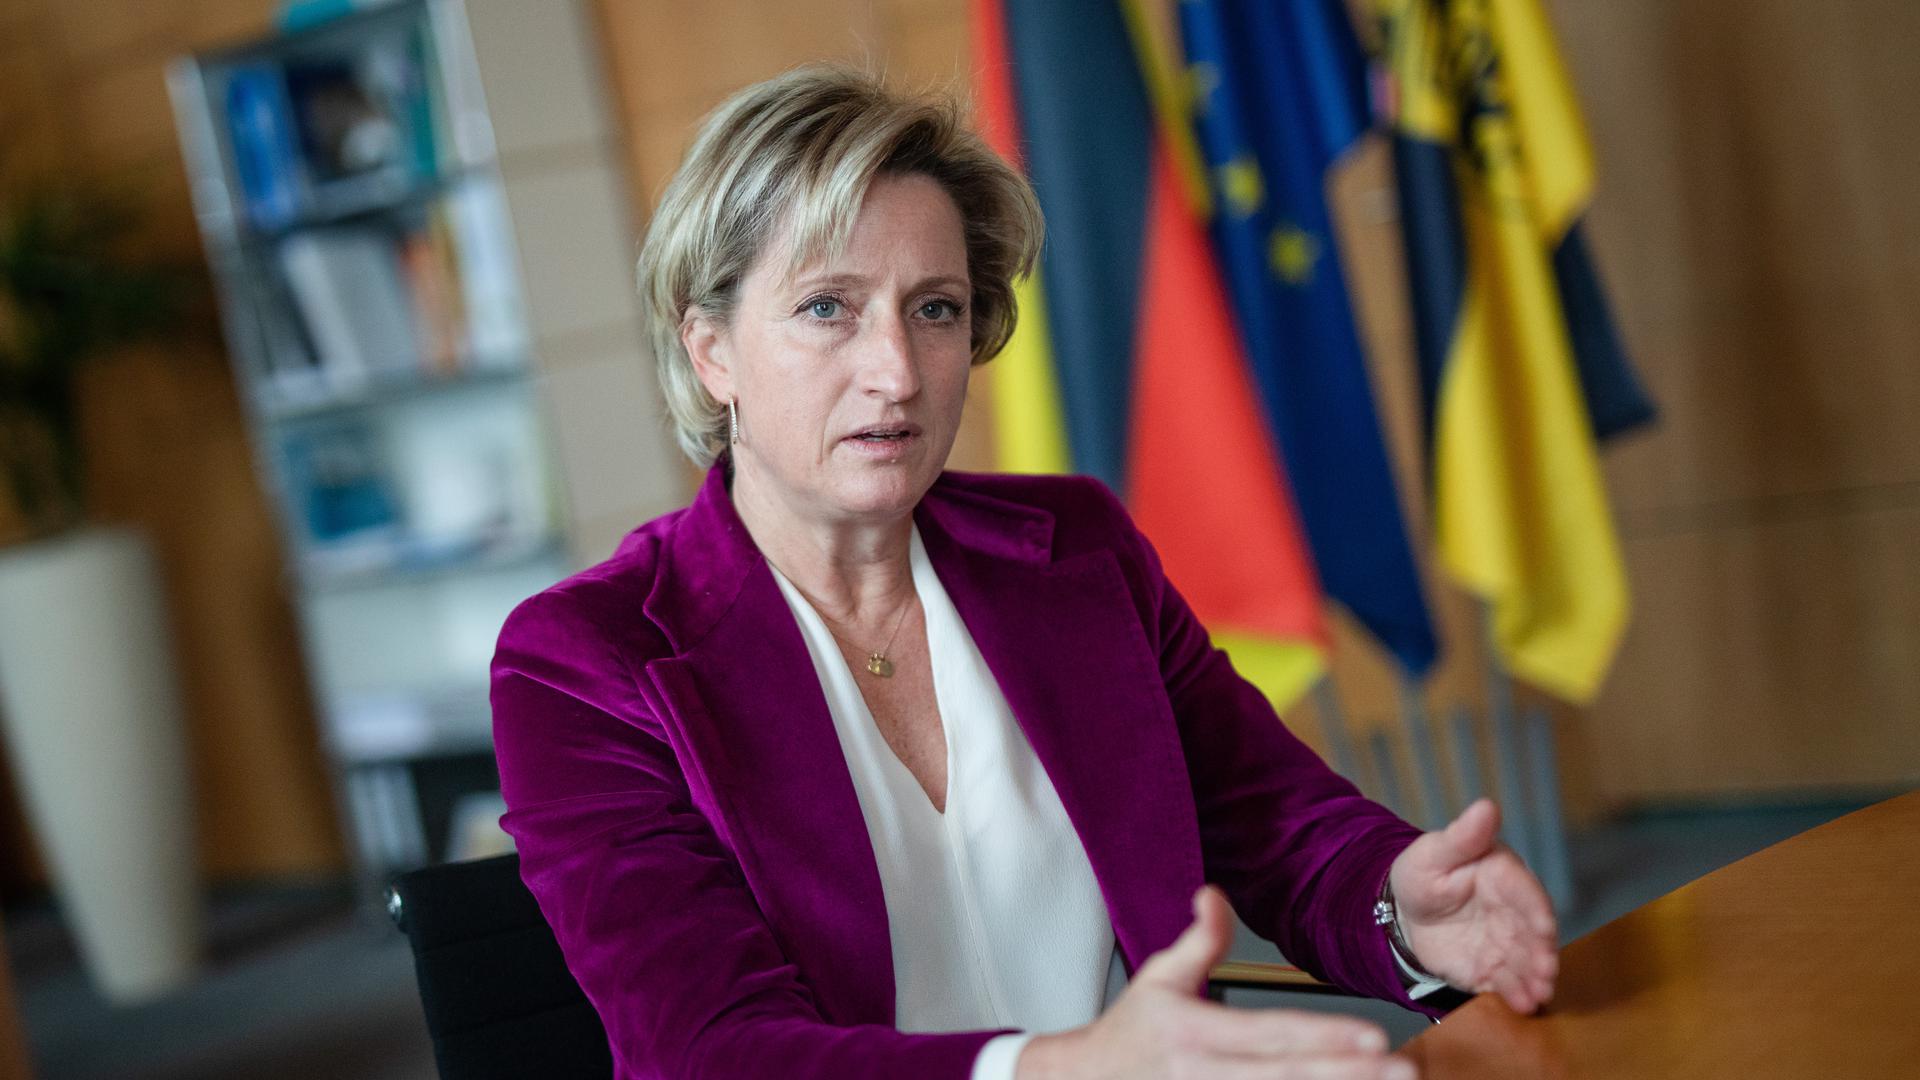 Nicole Hoffmeister-Kraut (CDU), Wirtschaftsministerin von Baden-Württemberg, spricht in einem Jahresabschlussinterview mit Journalisten der dpa. 